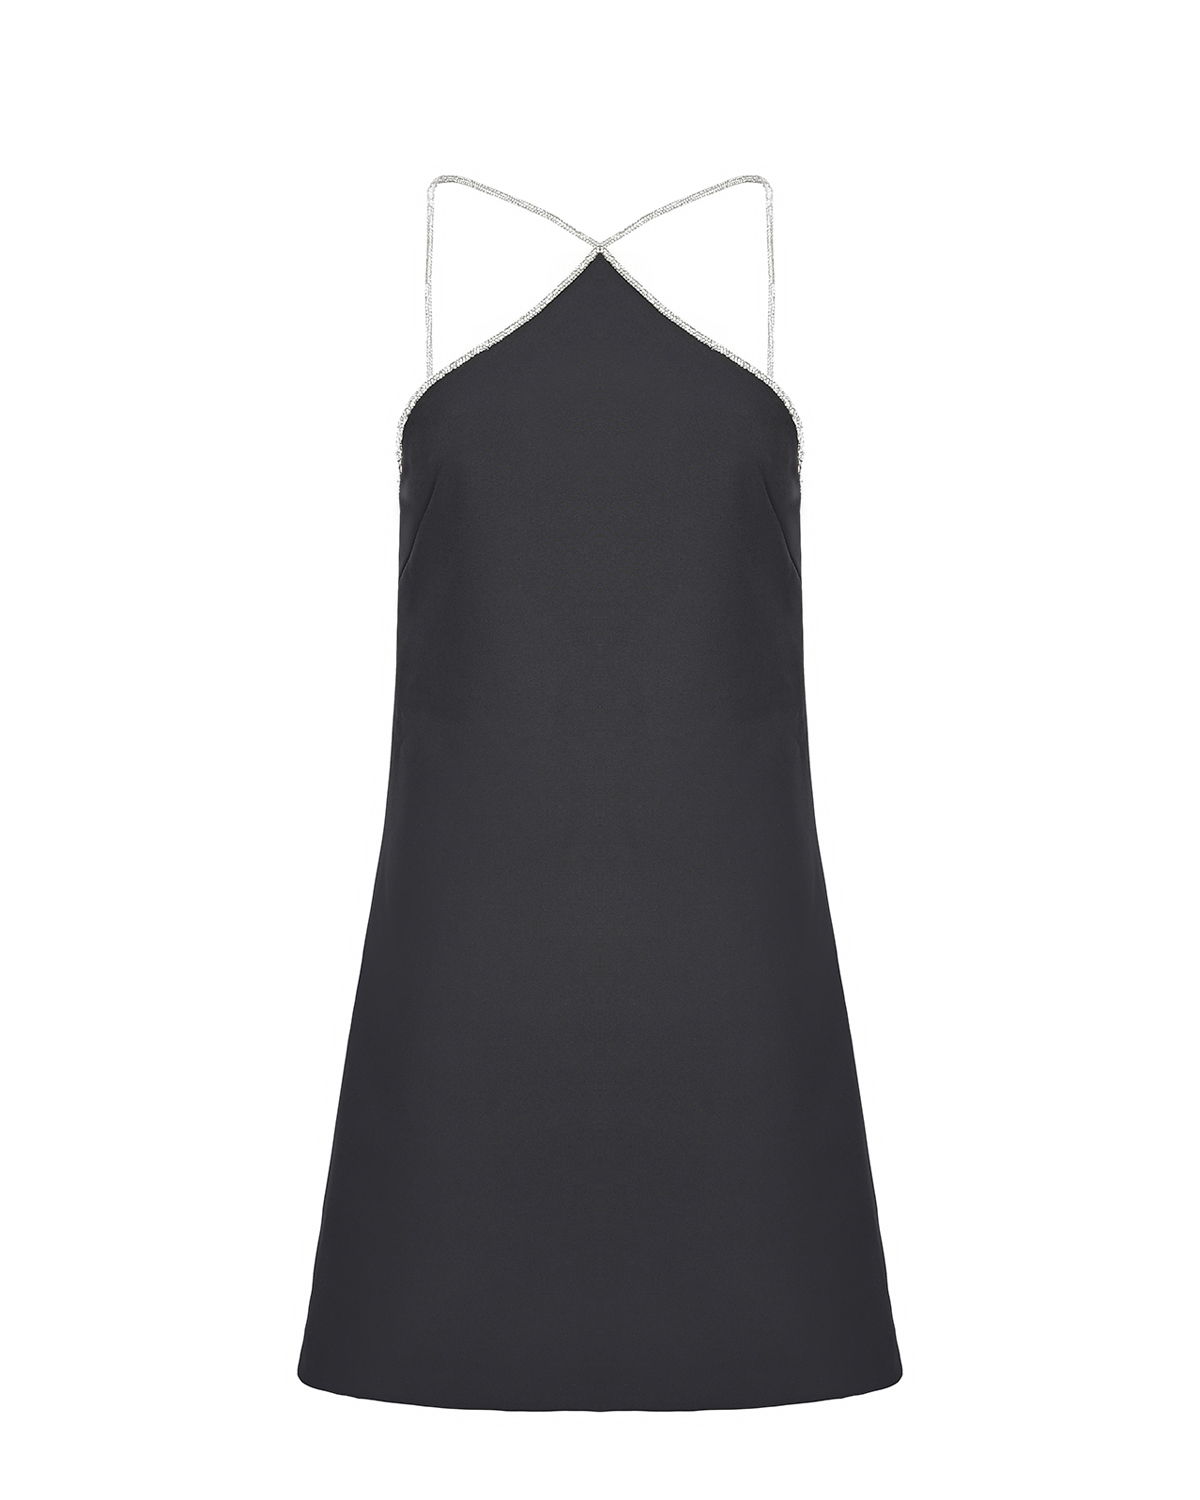 Платье-халтер с отделкой стразами ALINE, размер 40, цвет черный - фото 1